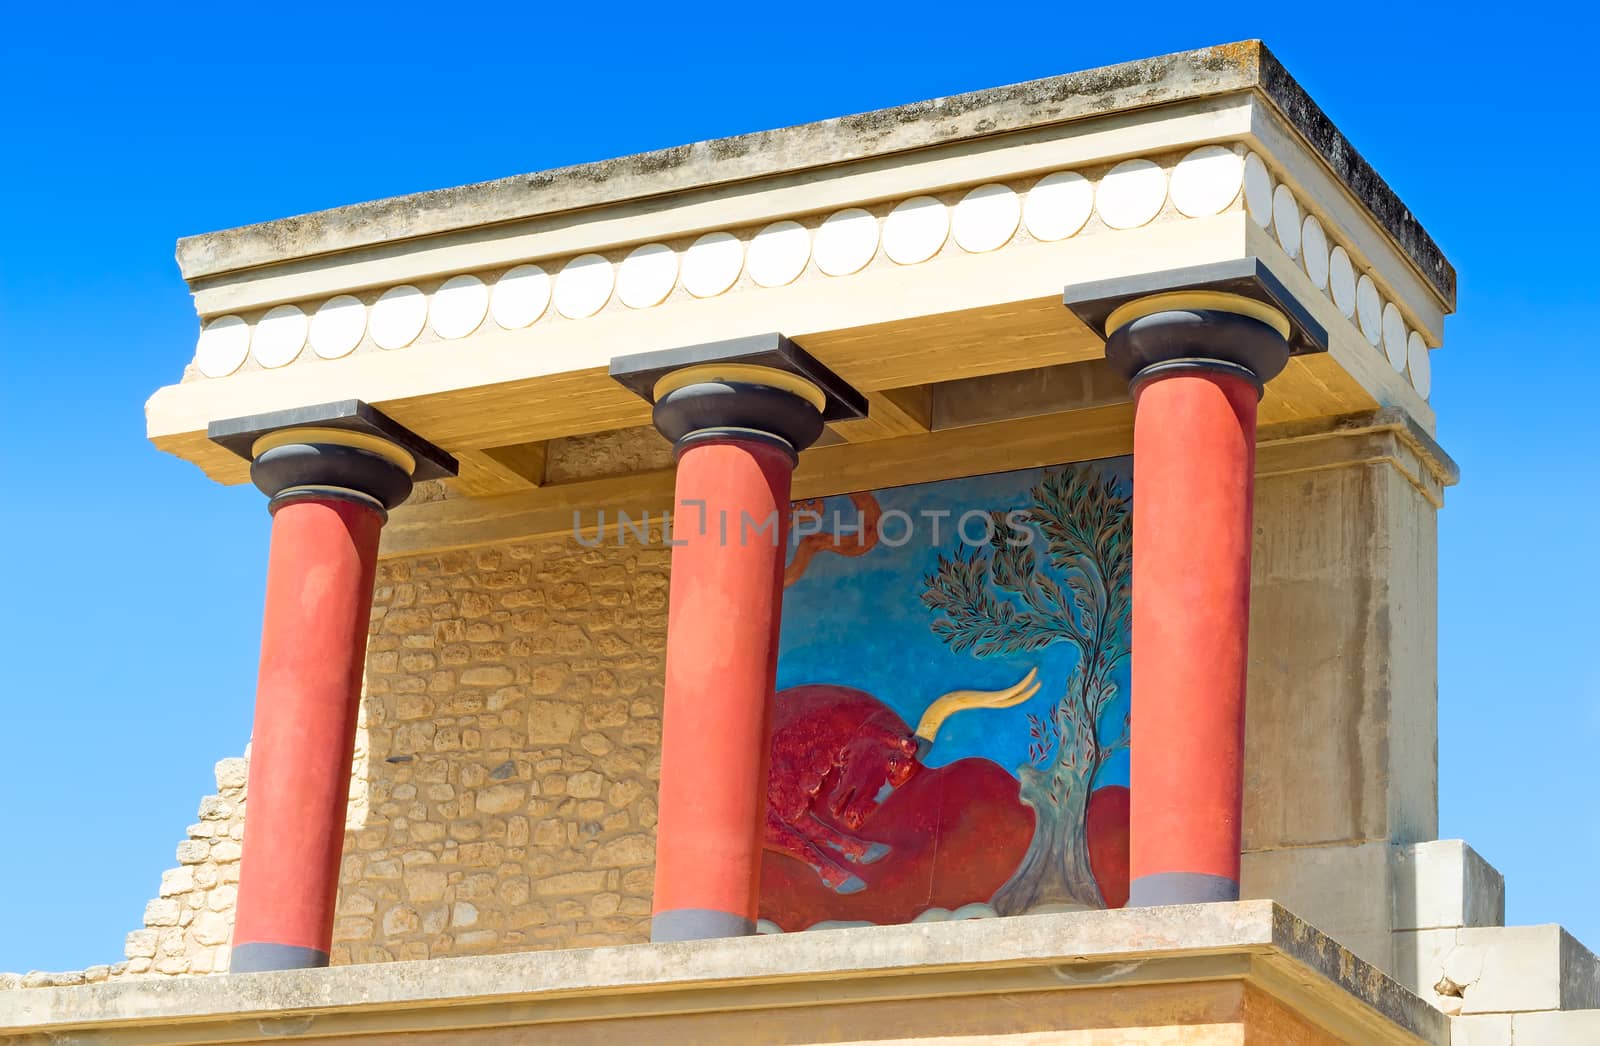 Knossos Palace of king Minos, Crete, Greece. by georgina198